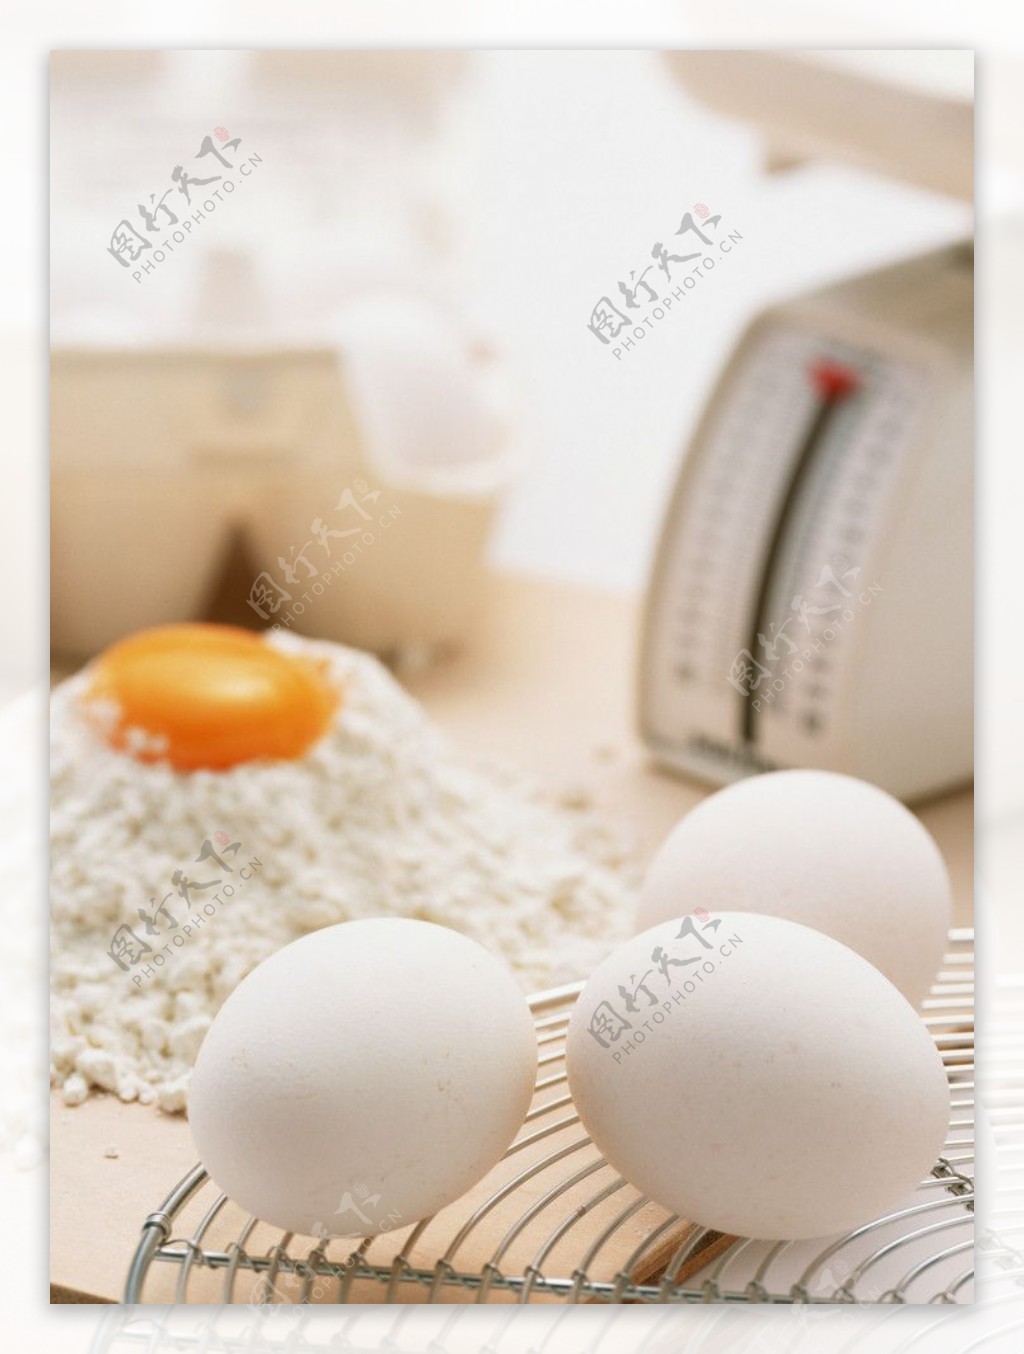 鸡蛋面包图片